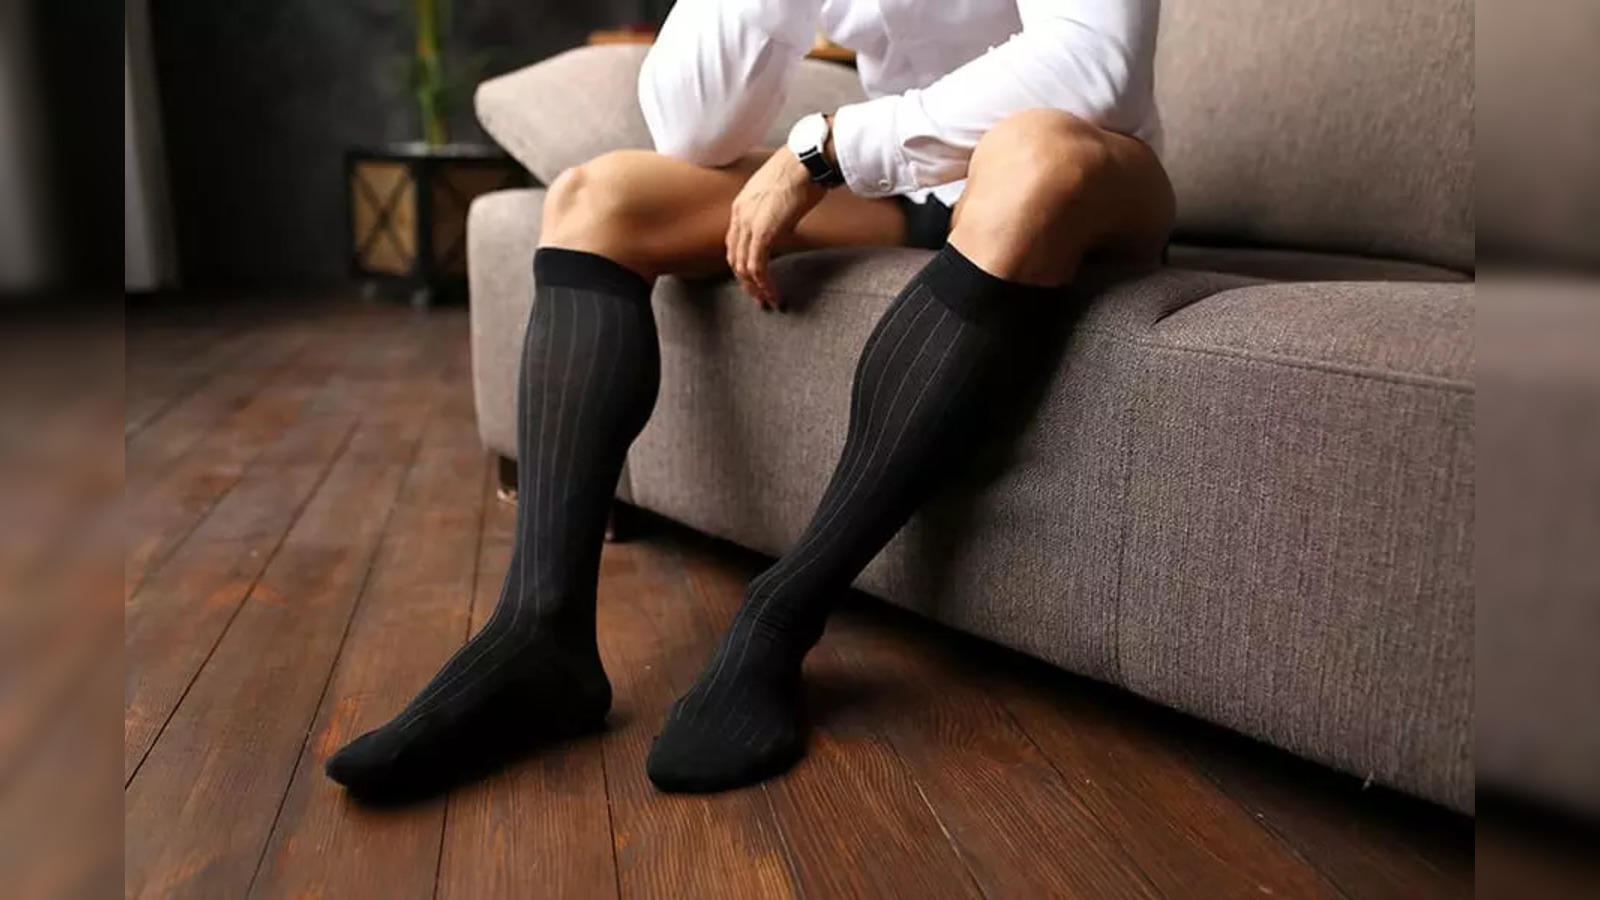 Long Socks for Men: Best Long Socks for Men: Check Out the List